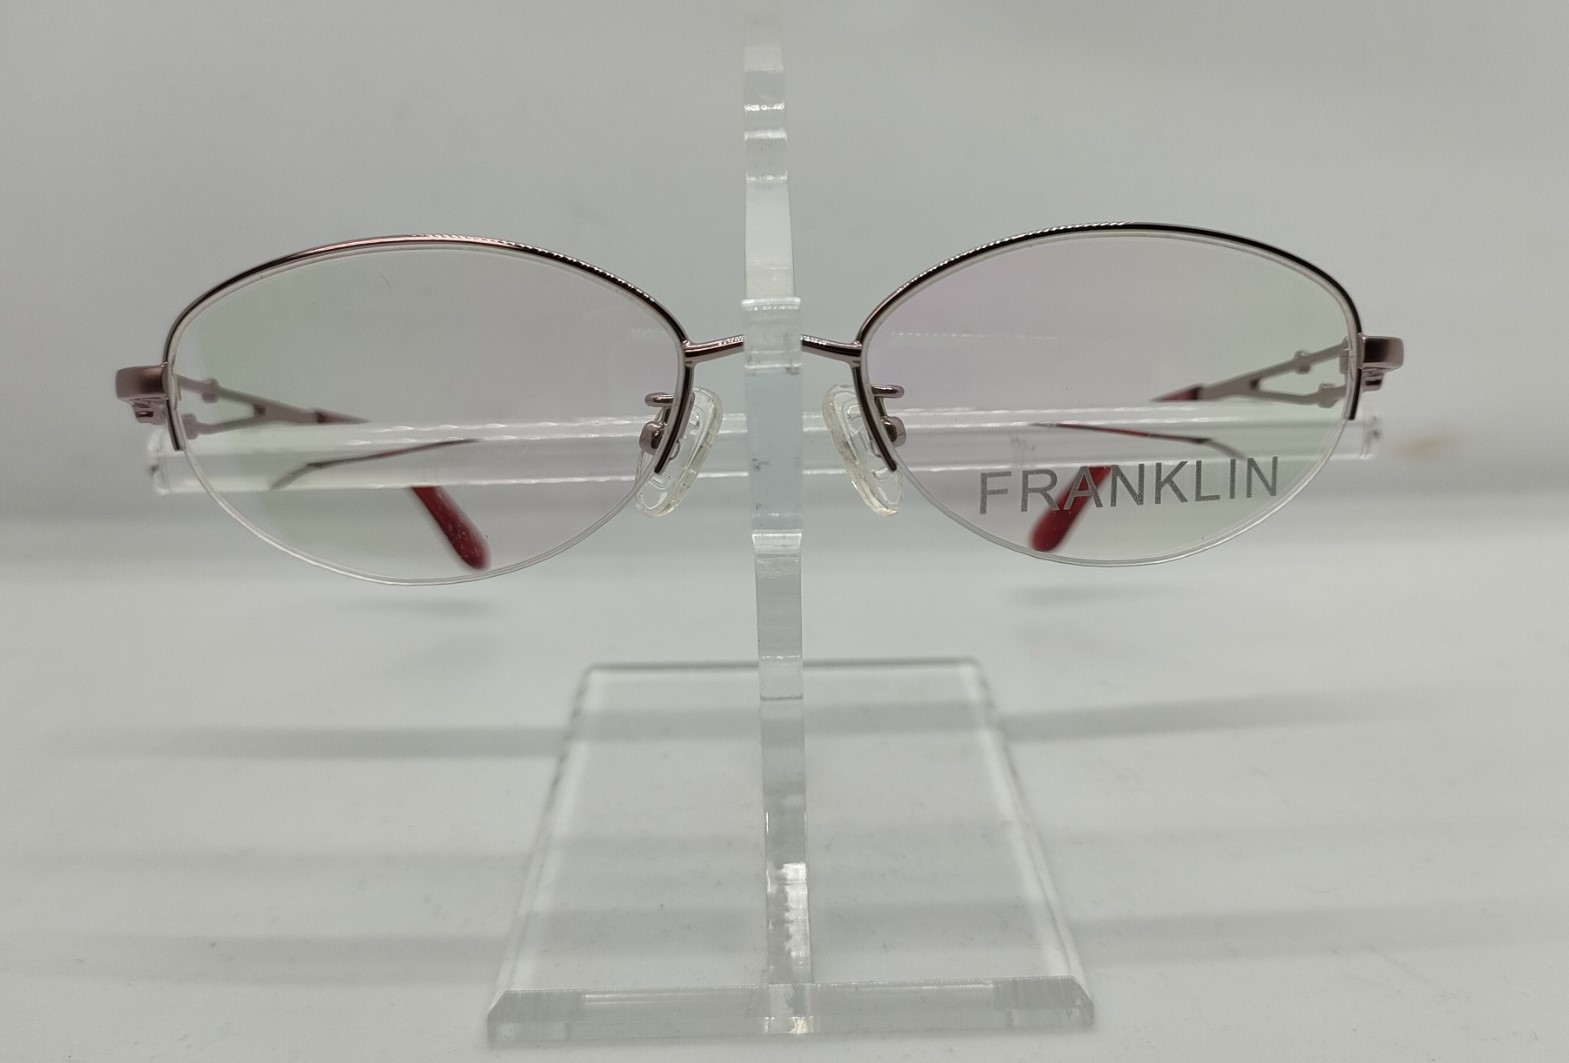 【レンズ付きメガネセット】フランクリン FR10-008B (C1) ローズメタル画像